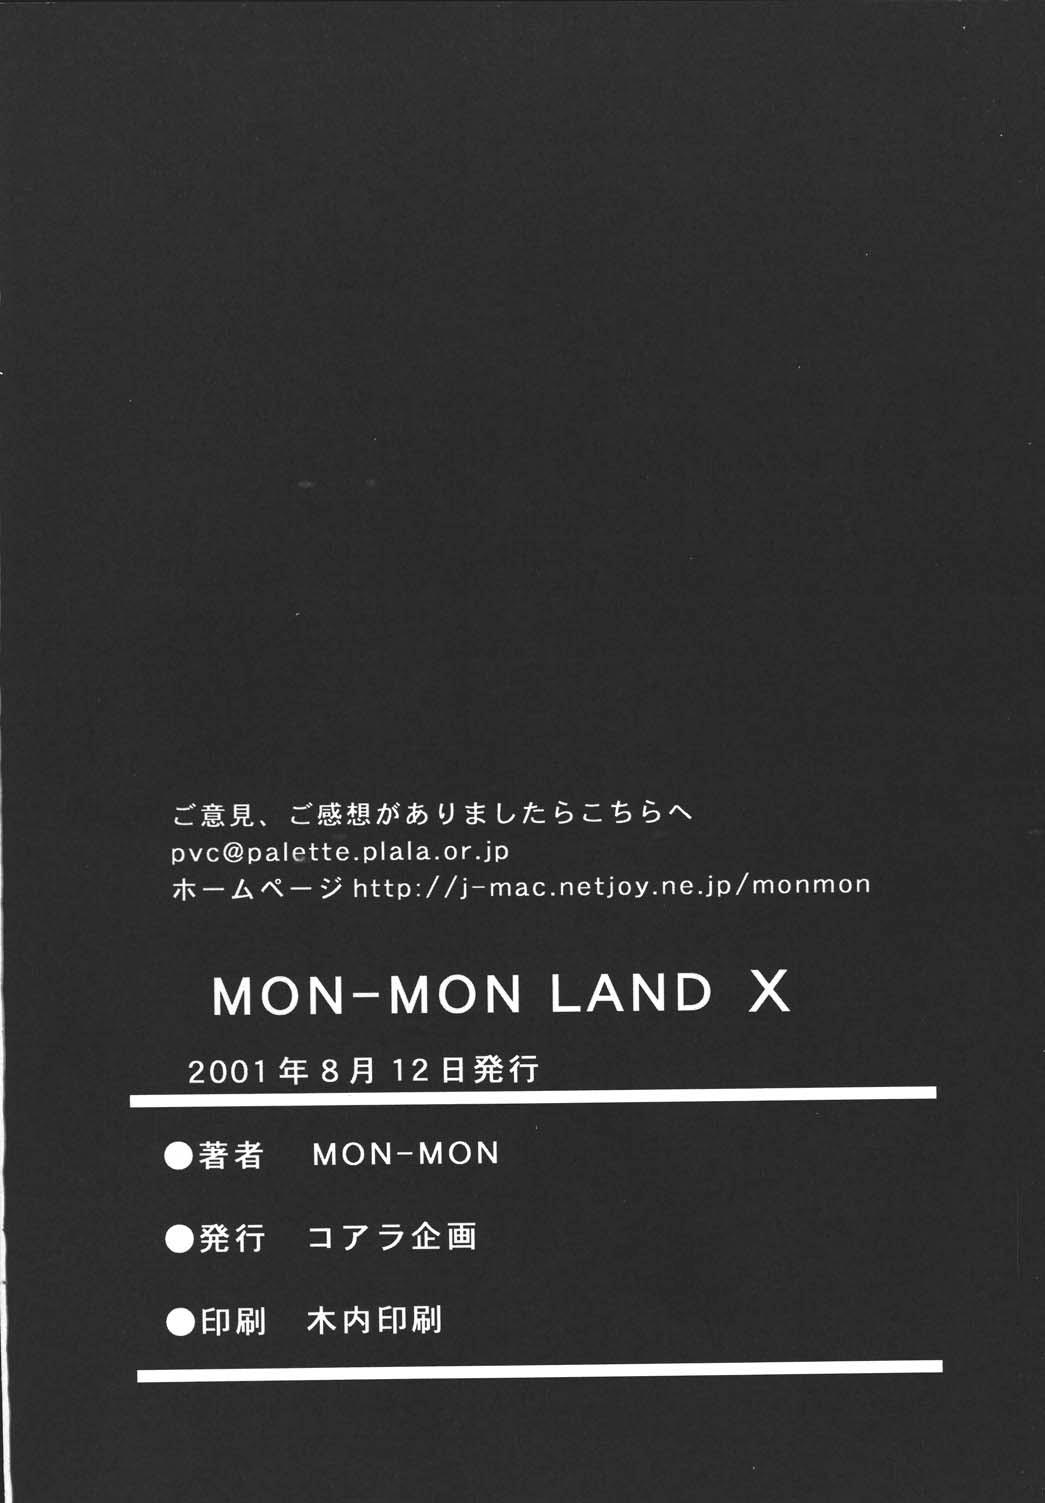 [コアラ企画 (MON-MON)] MON-MON-LAND EX 個人誌総集編